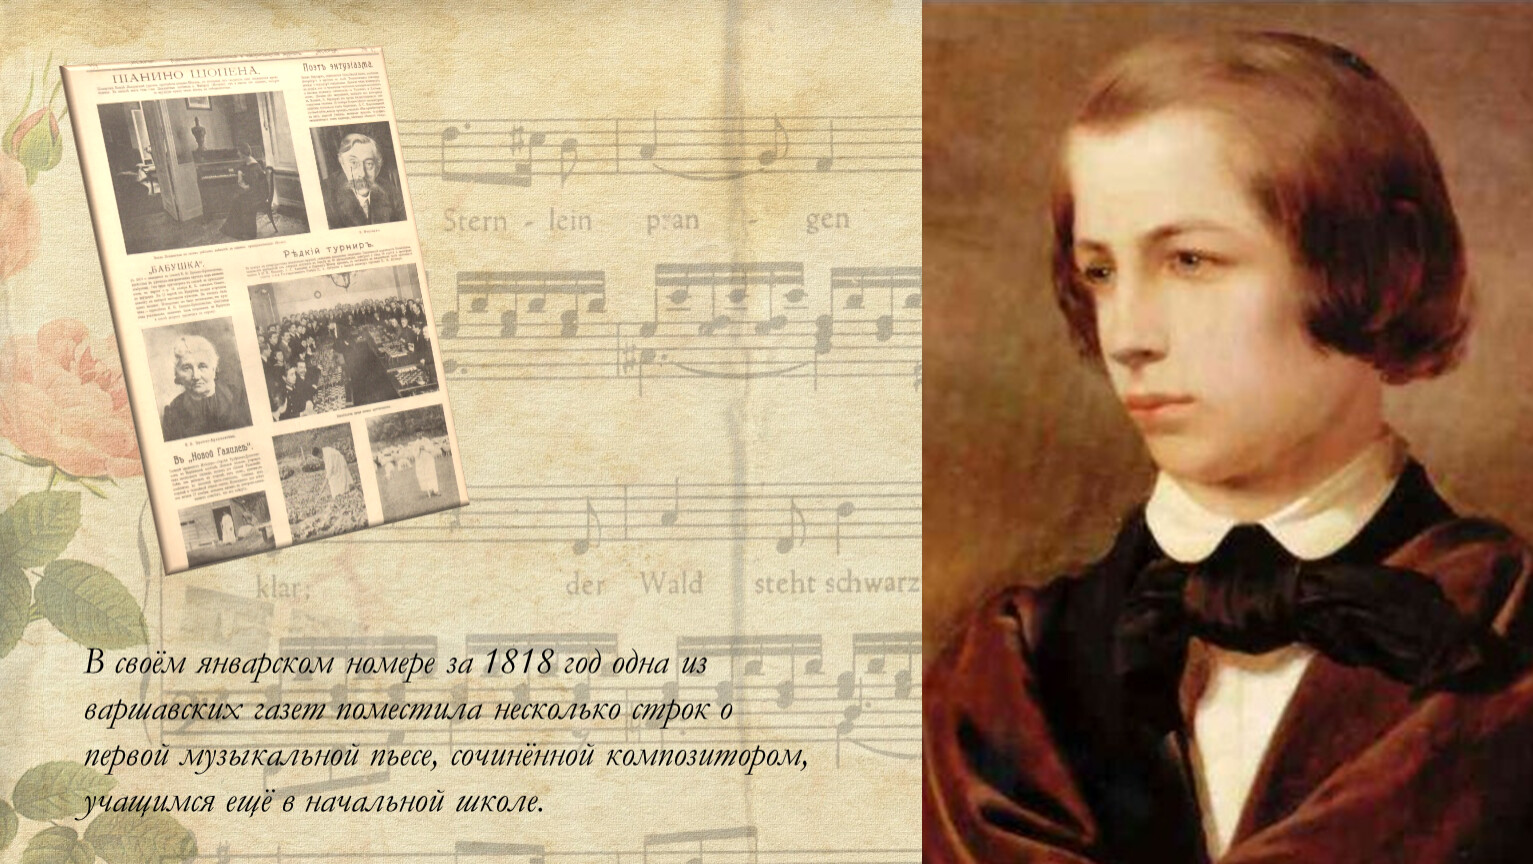 Первое музыкальное произведение. Шопен. Школа Шопена. Творческий путь Шопена. Выступление Шопена в Вене в 19 лет.